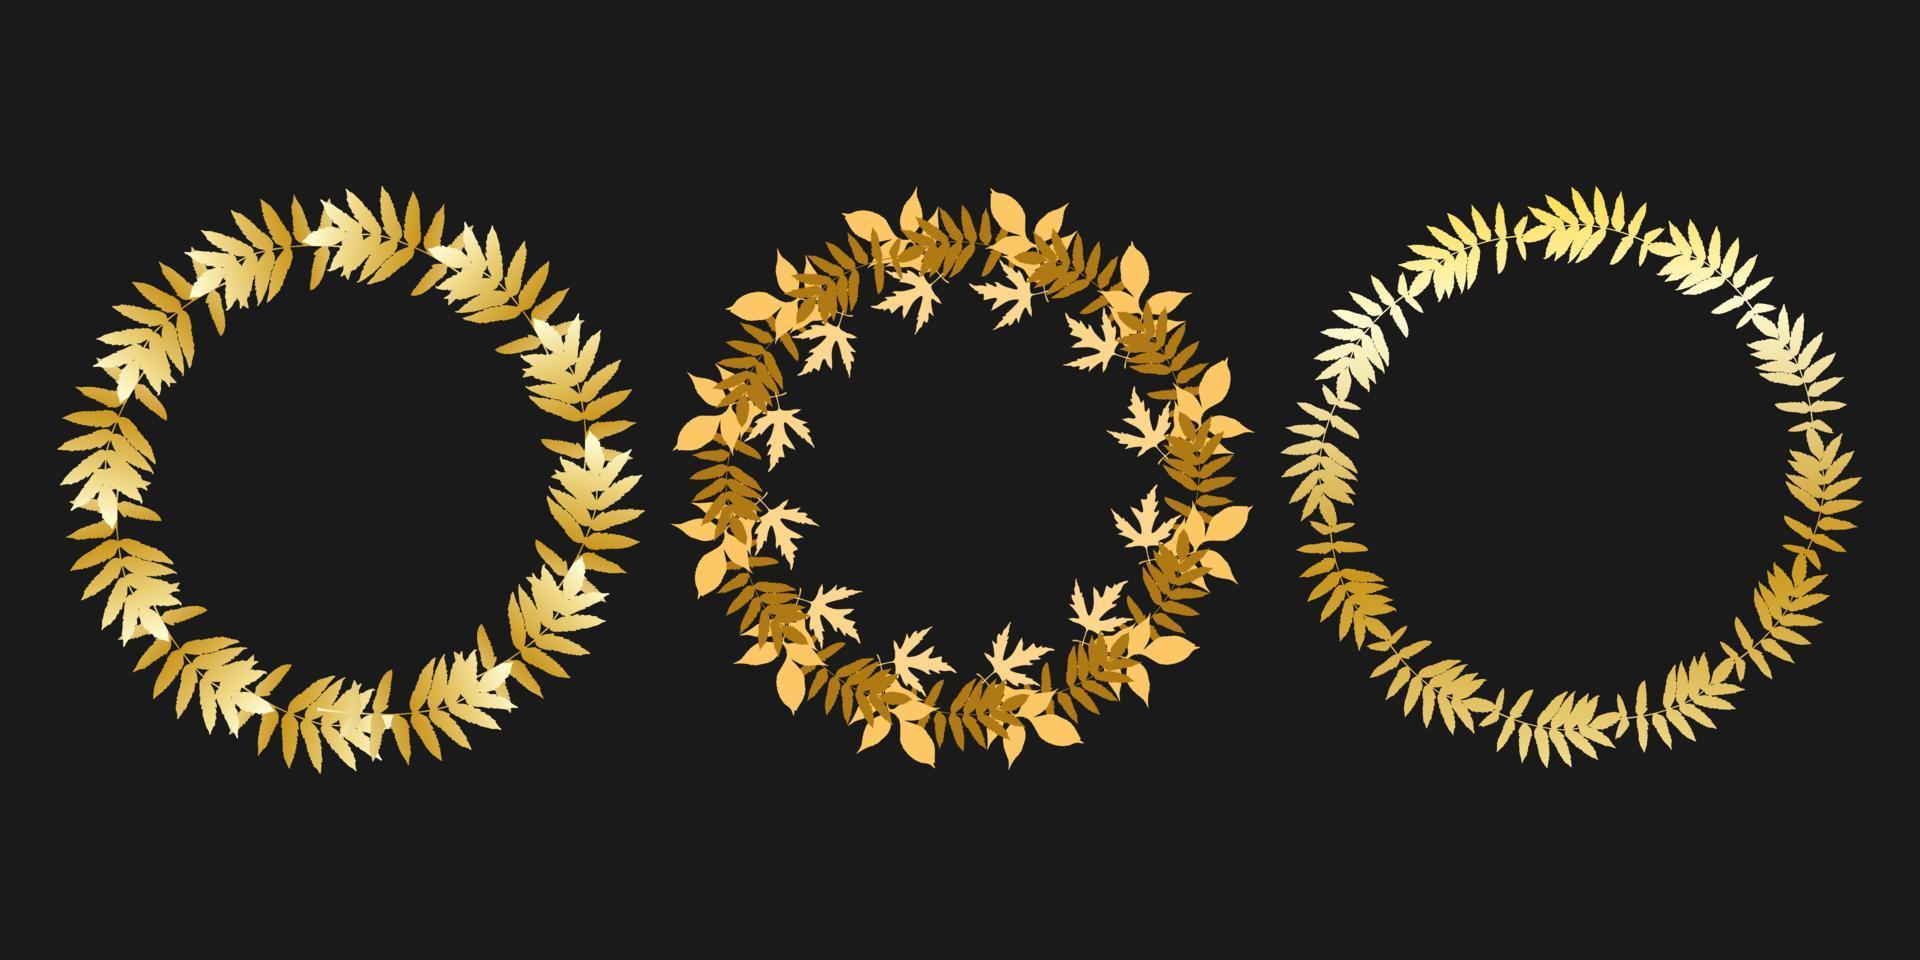 Kranzgoldblätter, gesetztes Blatt rund, dunkler Hintergrund. vektor